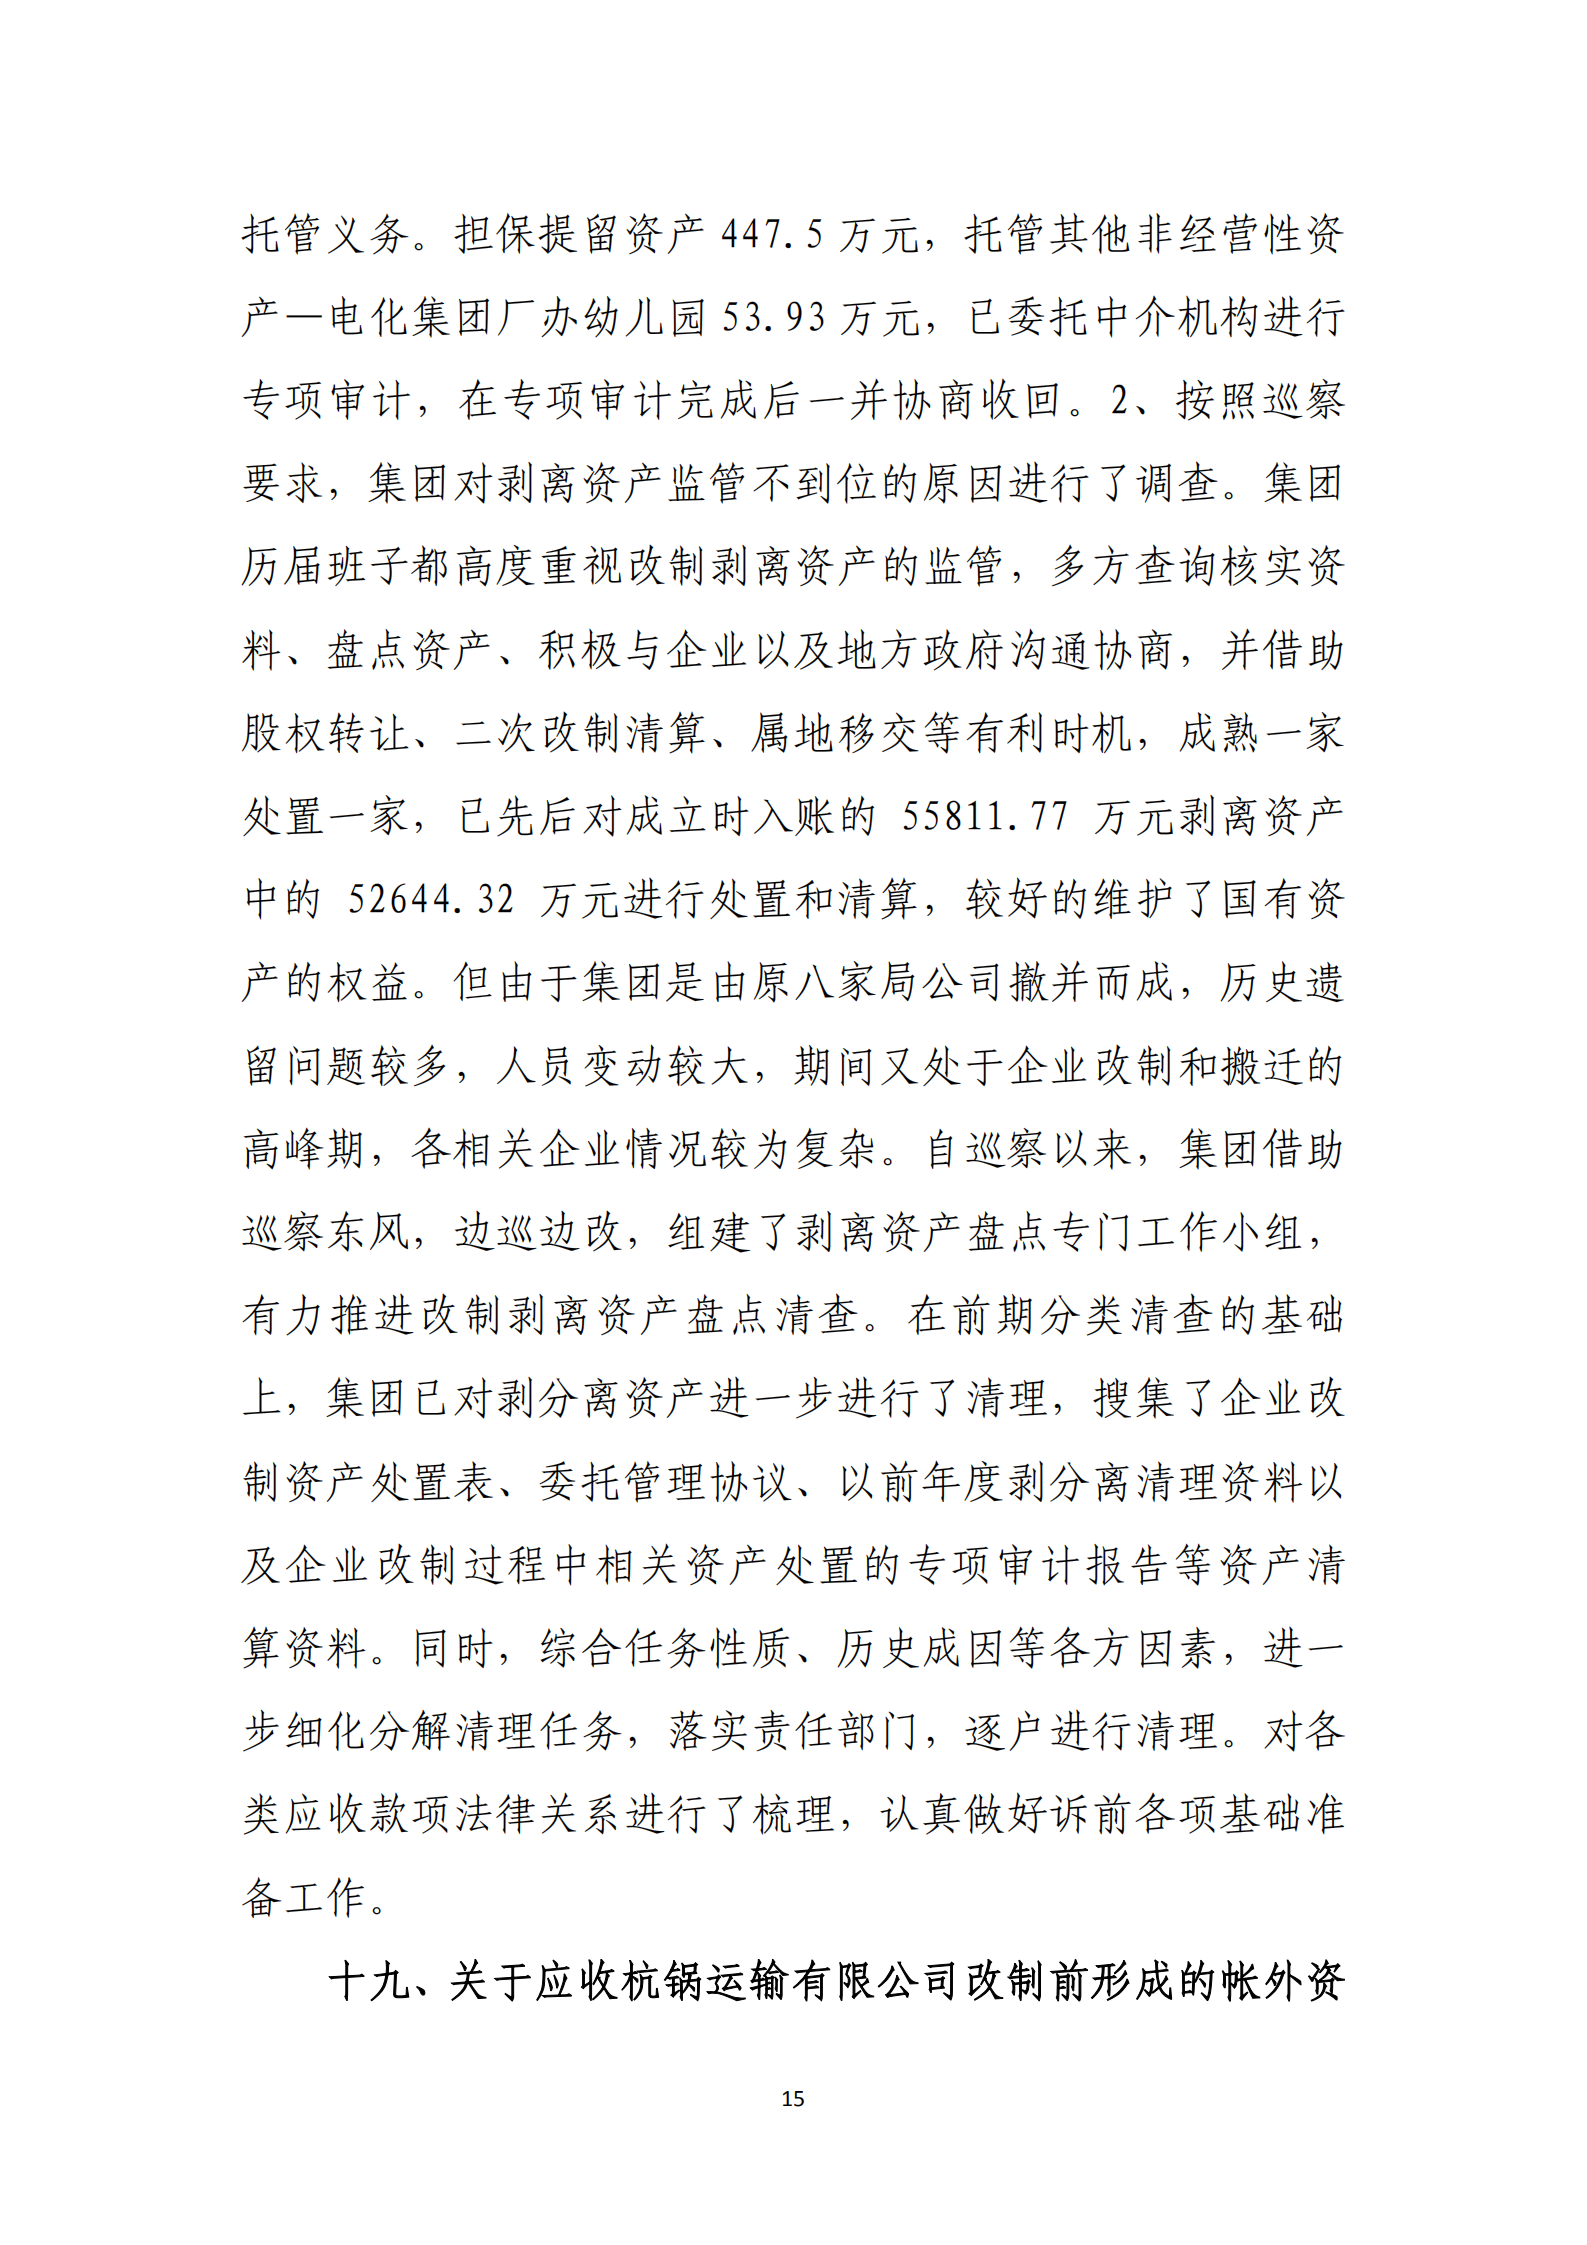 【体育365官方网站】中国有限公司党委关于巡察整改情况的通报_14.png